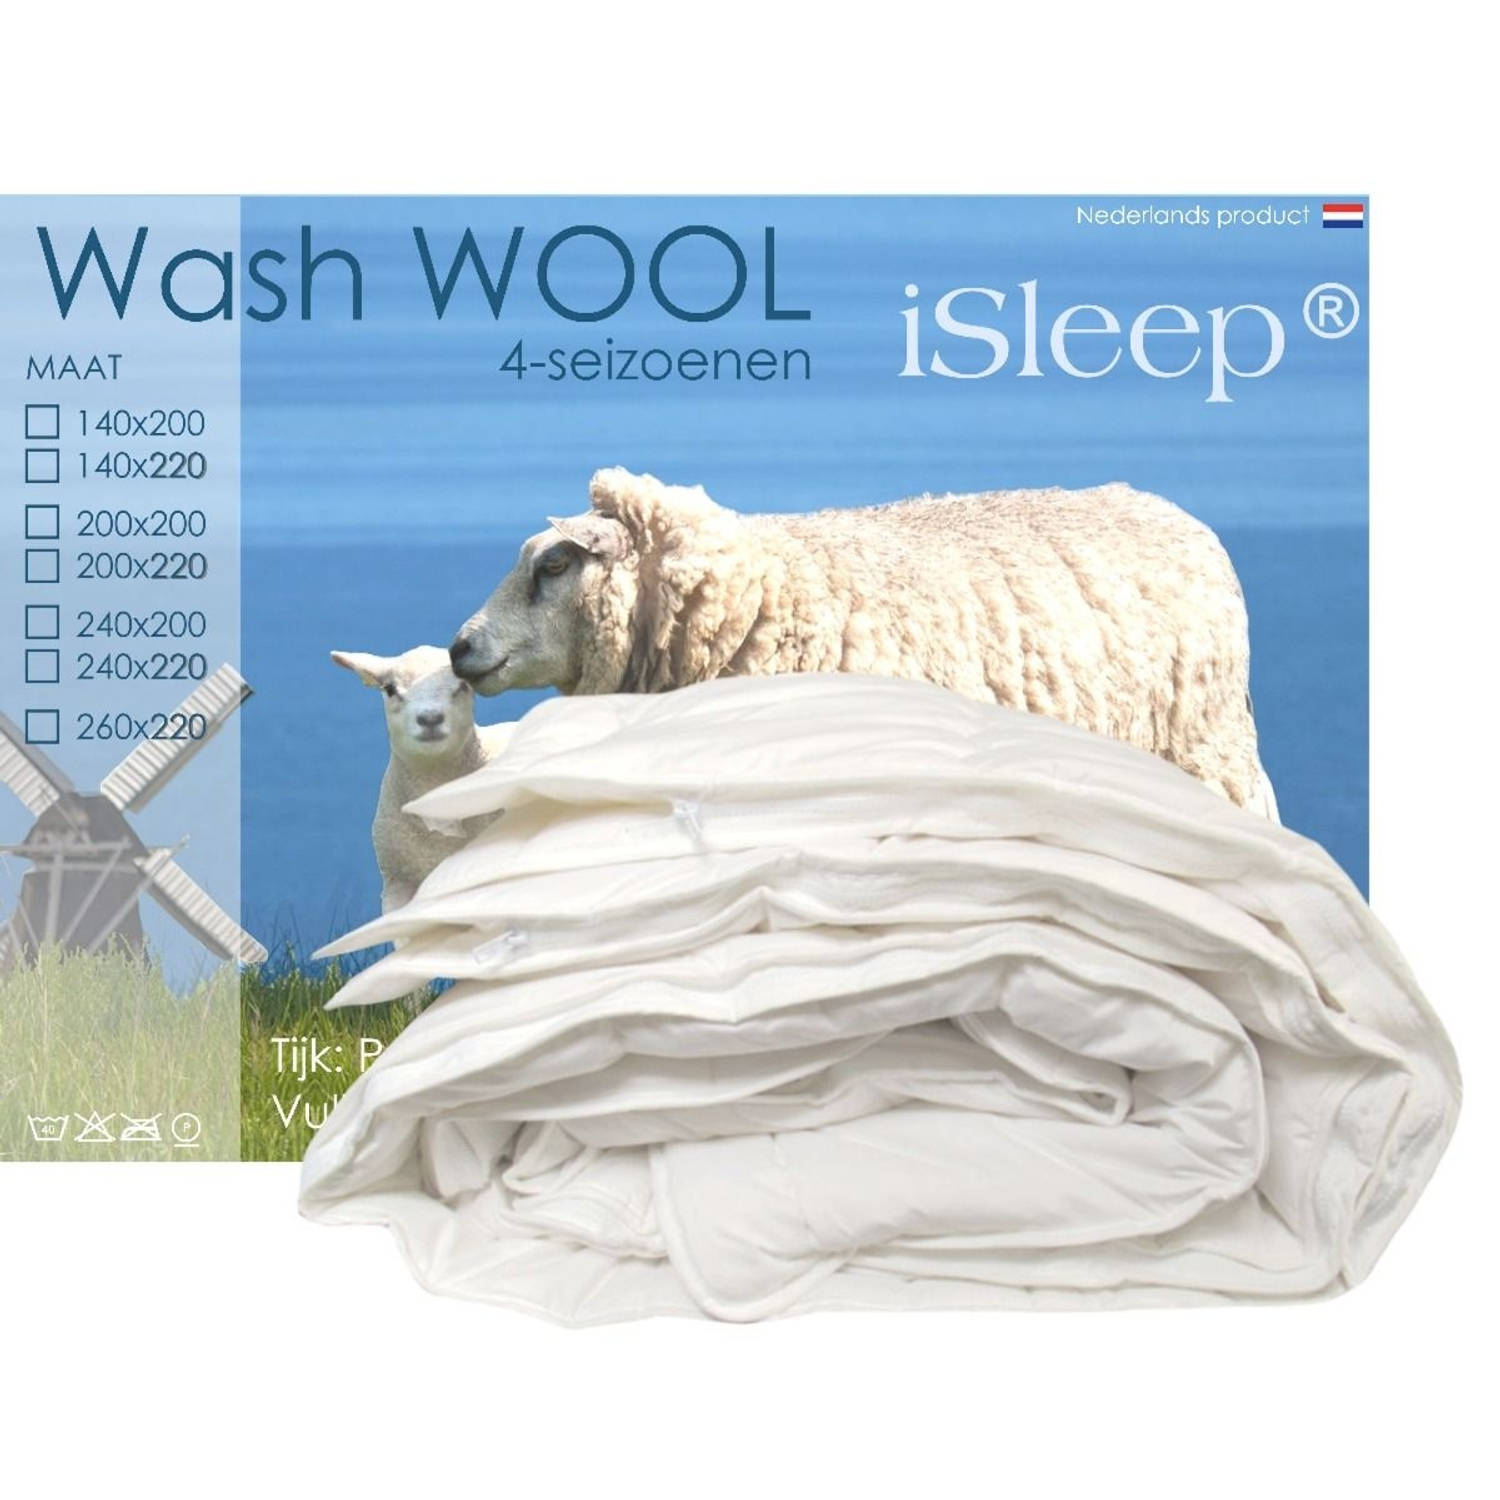 iSleep Wash Wool wollen 4-seizoenen dekbed wasbare wol Lits-jumeaux 240x220 cm